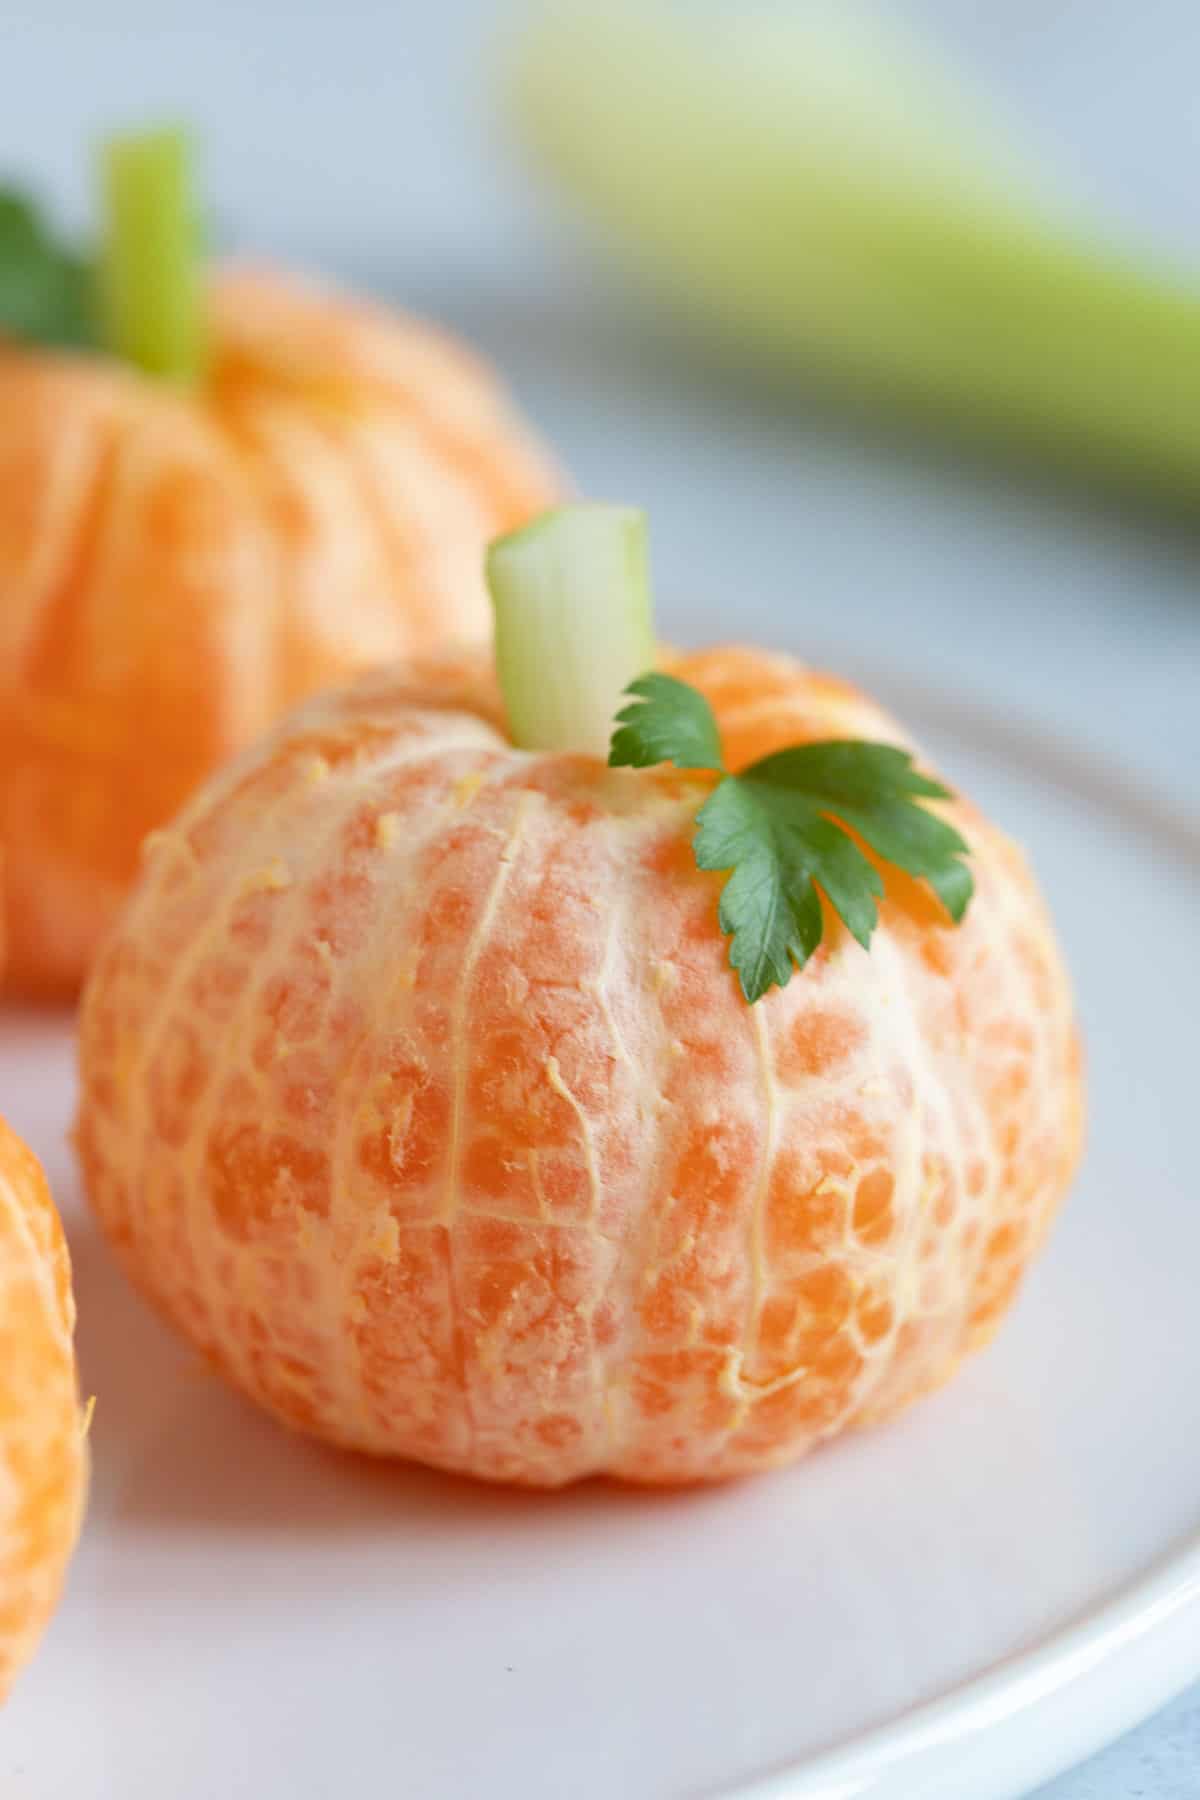 A Halloween clementine pumpkin on a plate.